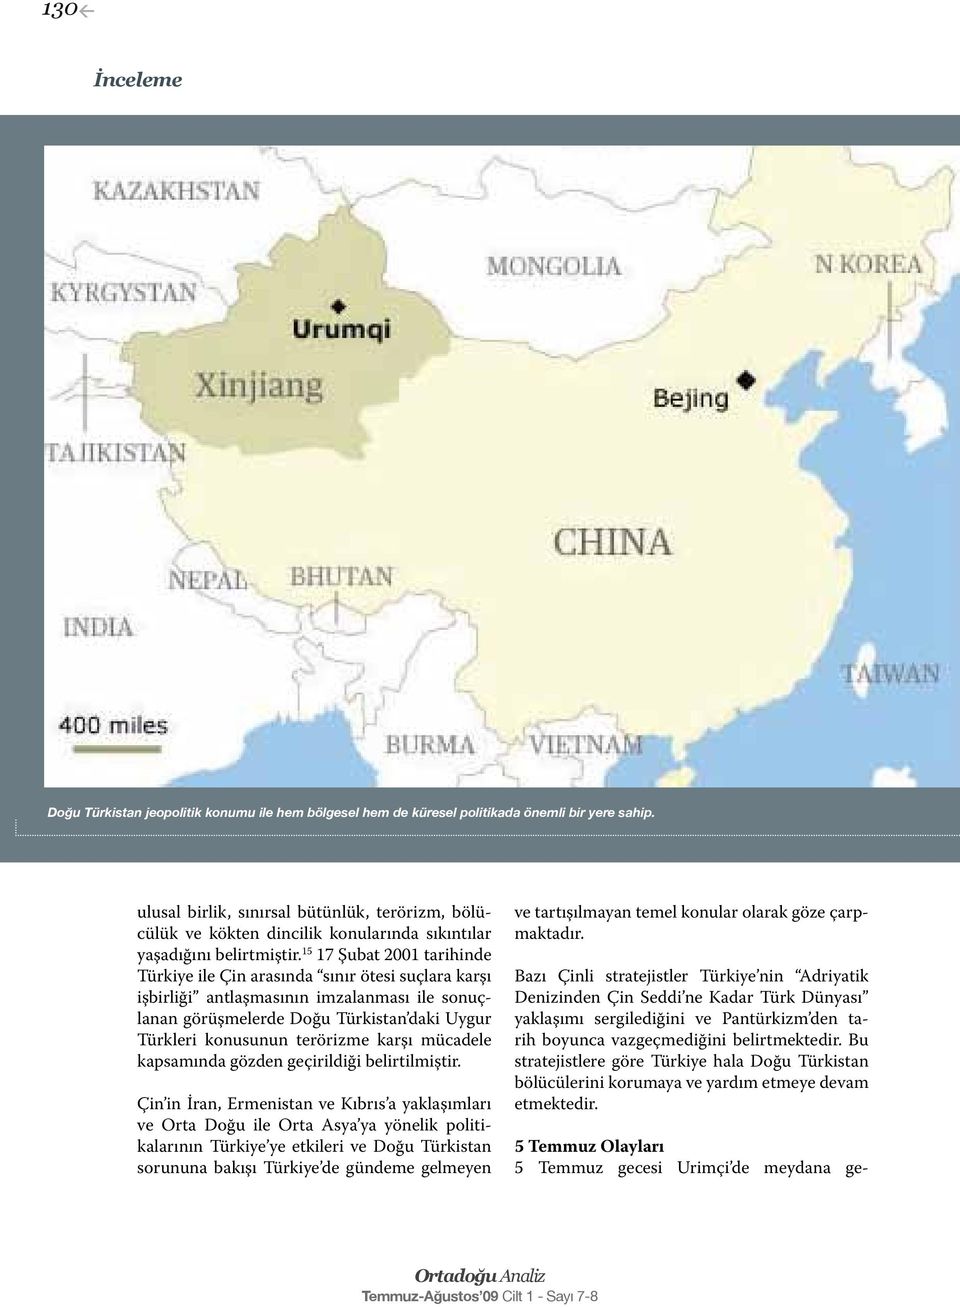 15 17 Şubat 2001 tarihinde Türkiye ile Çin arasında sınır ötesi suçlara karşı işbirliği antlaşmasının imzalanması ile sonuçlanan görüşmelerde Doğu Türkistan daki Uygur Türkleri konusunun terörizme